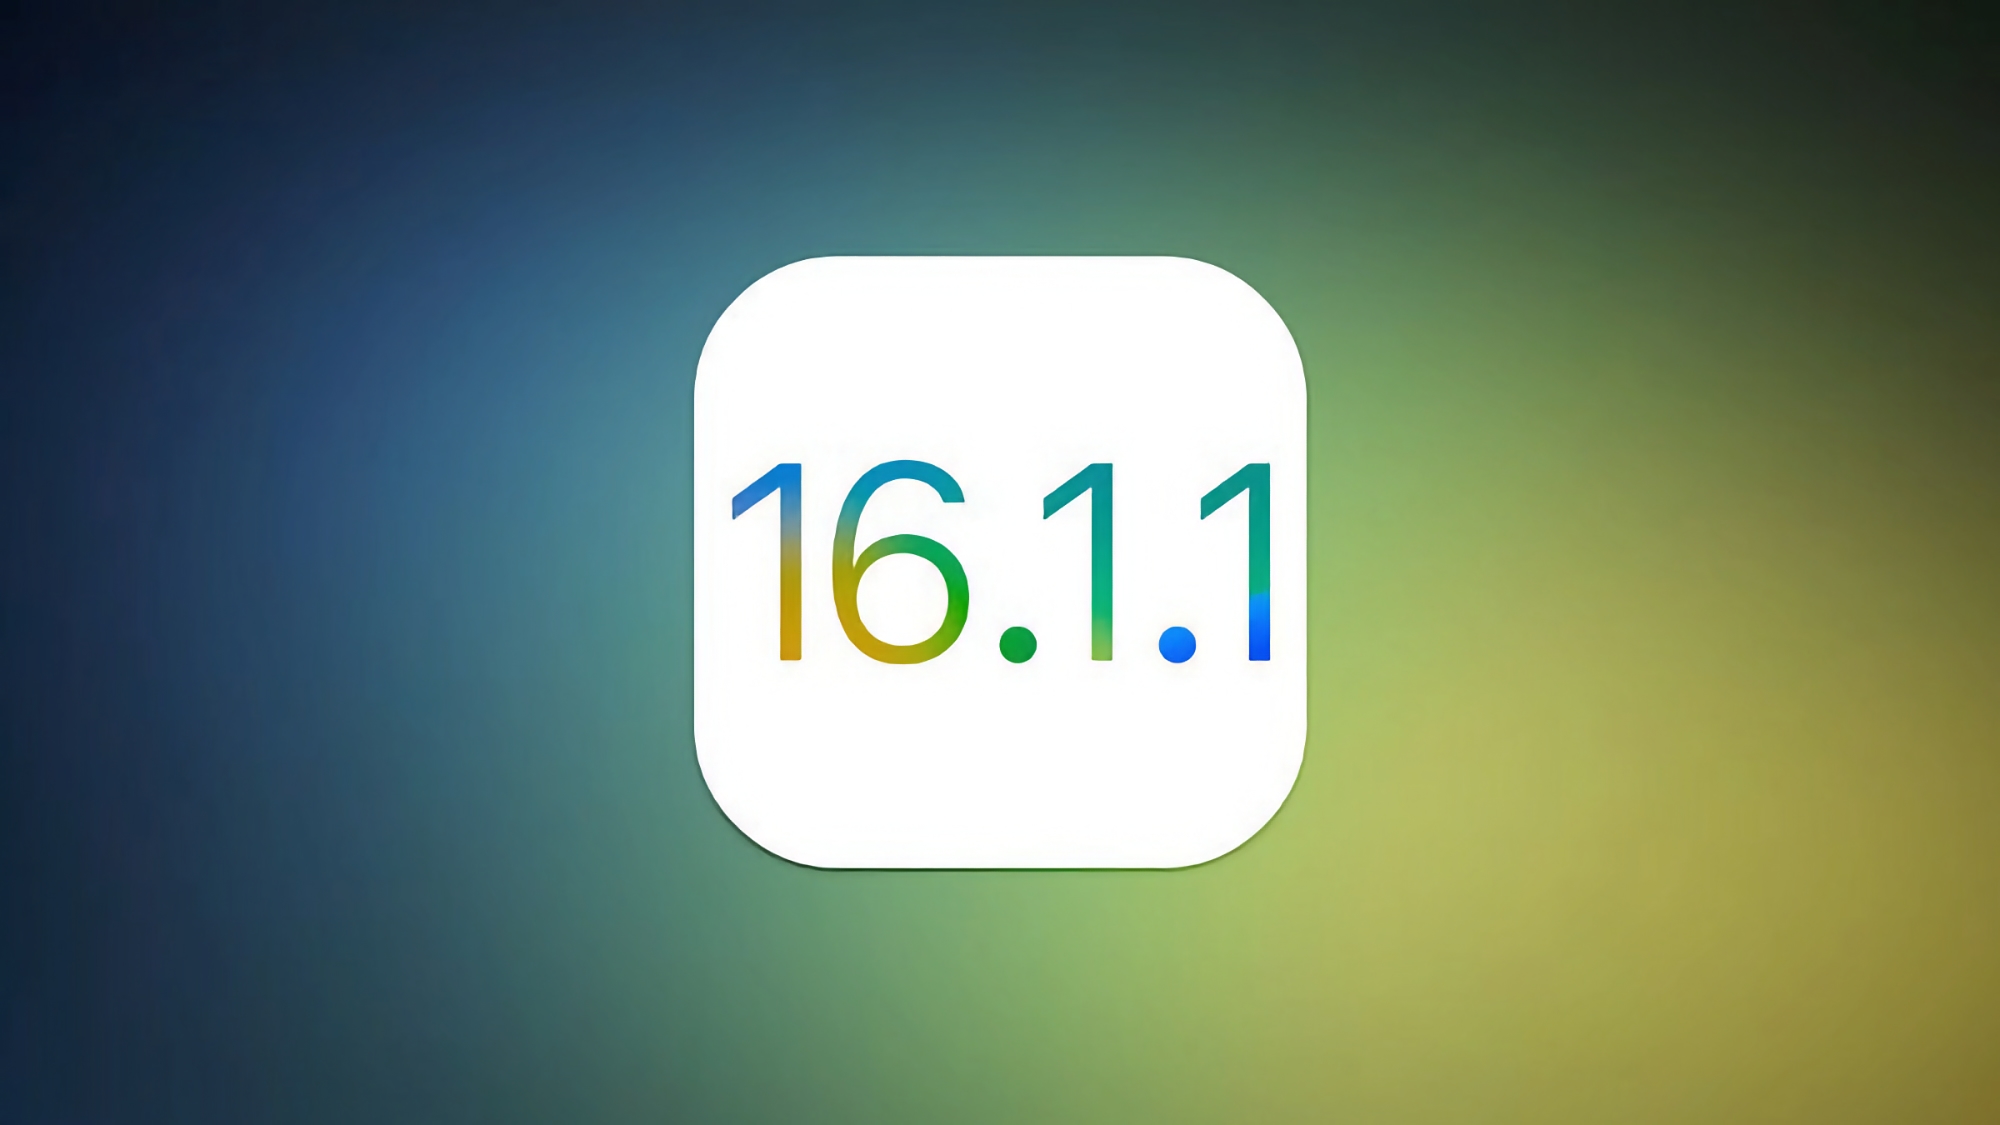 Trabajando en los errores: Apple lanzó iOS 16.1.1 y iPadOS 16.1.1